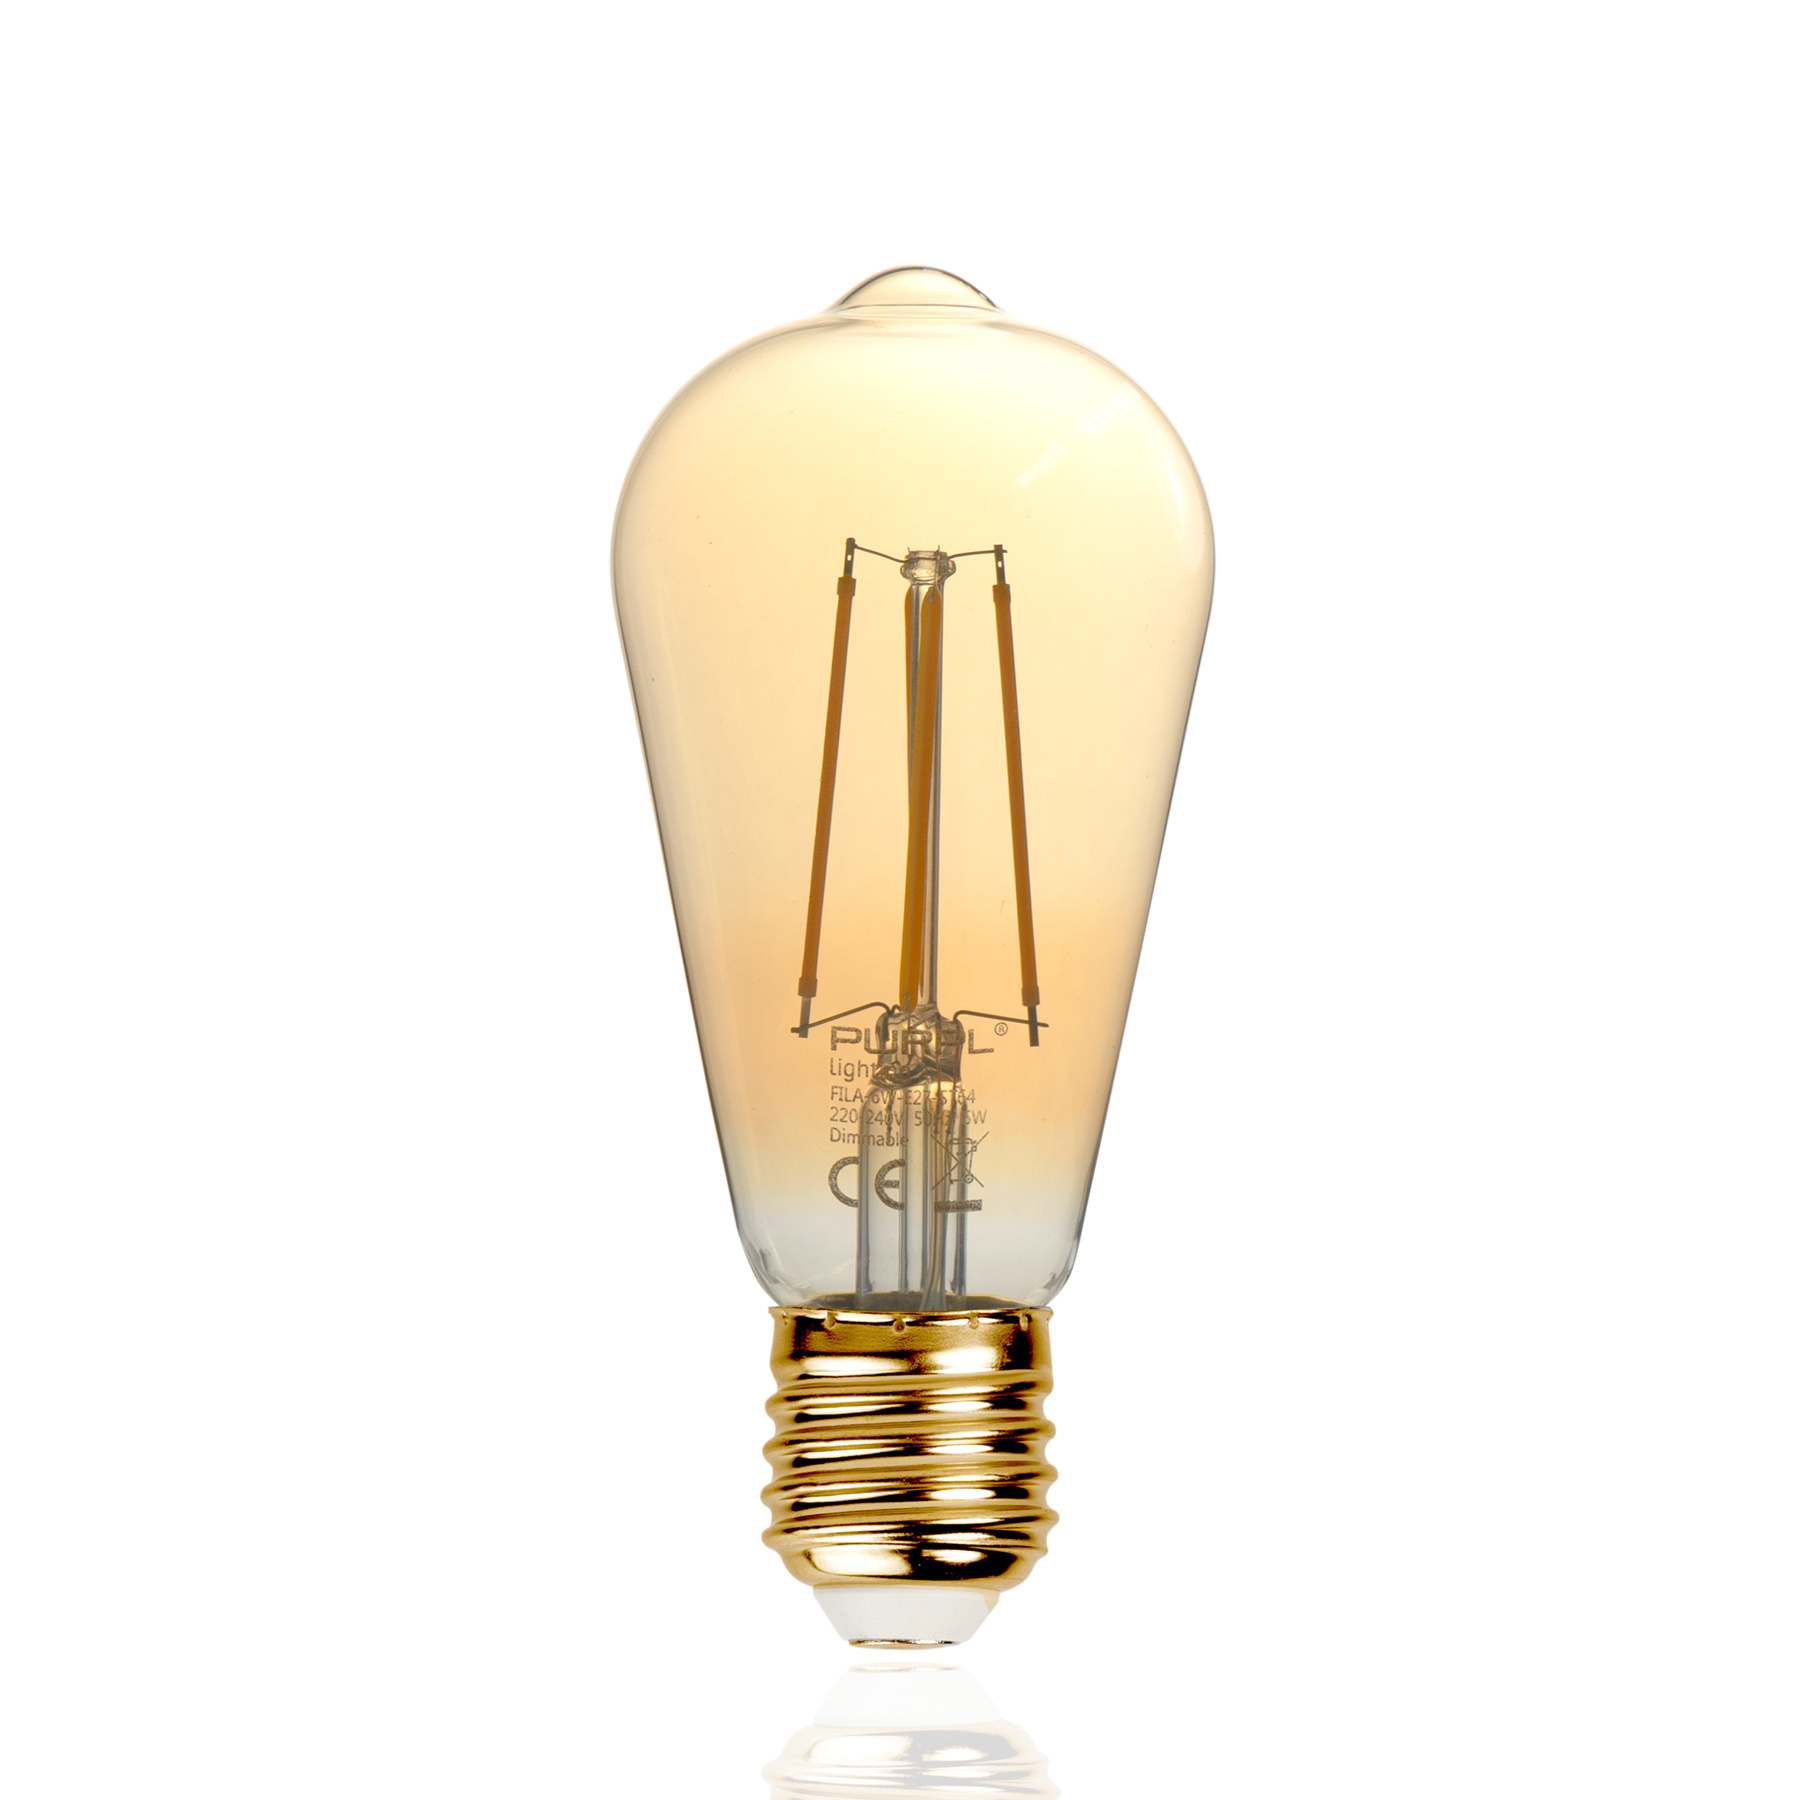 Munching Storen aantrekkelijk LED Filament Lamp E27 ST64 2200K Warm Wit 6W - Ledlichtstunter.nl